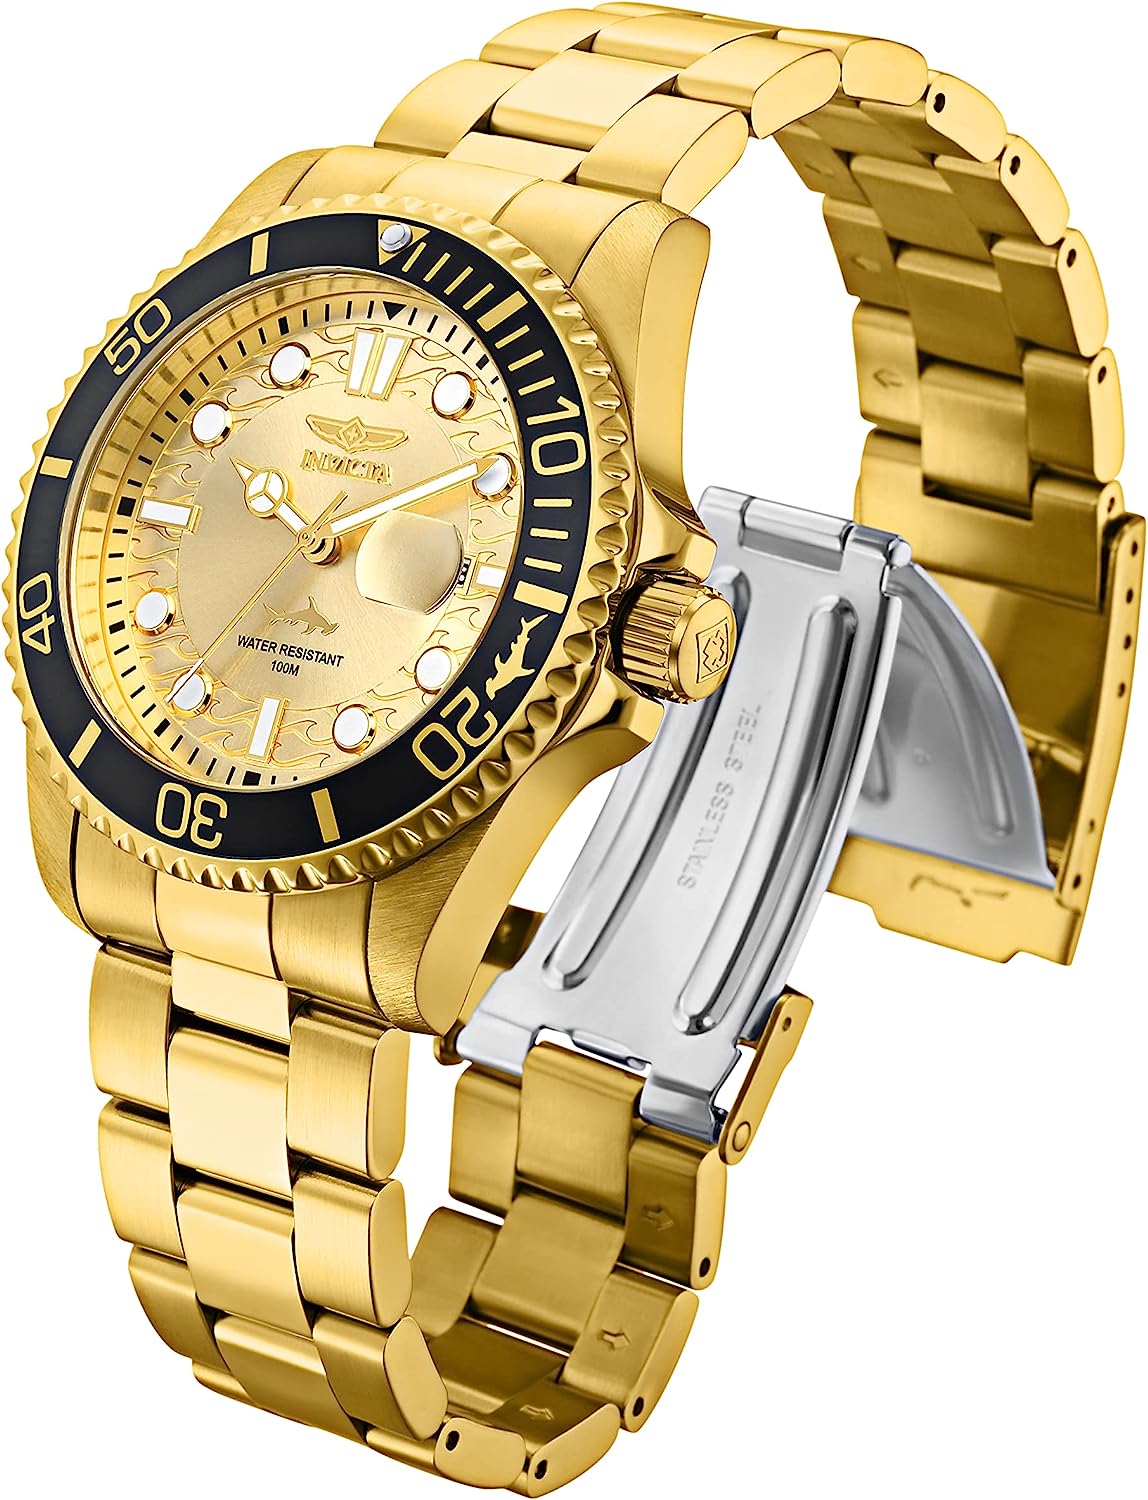 腕時計 インヴィクタ インビクタ プロダイバー メンズ Invicta Mens Pro Diver Quartz Watch, Gold,  30025腕時計 インヴィクタ インビクタ プロダイバー メンズ angelica